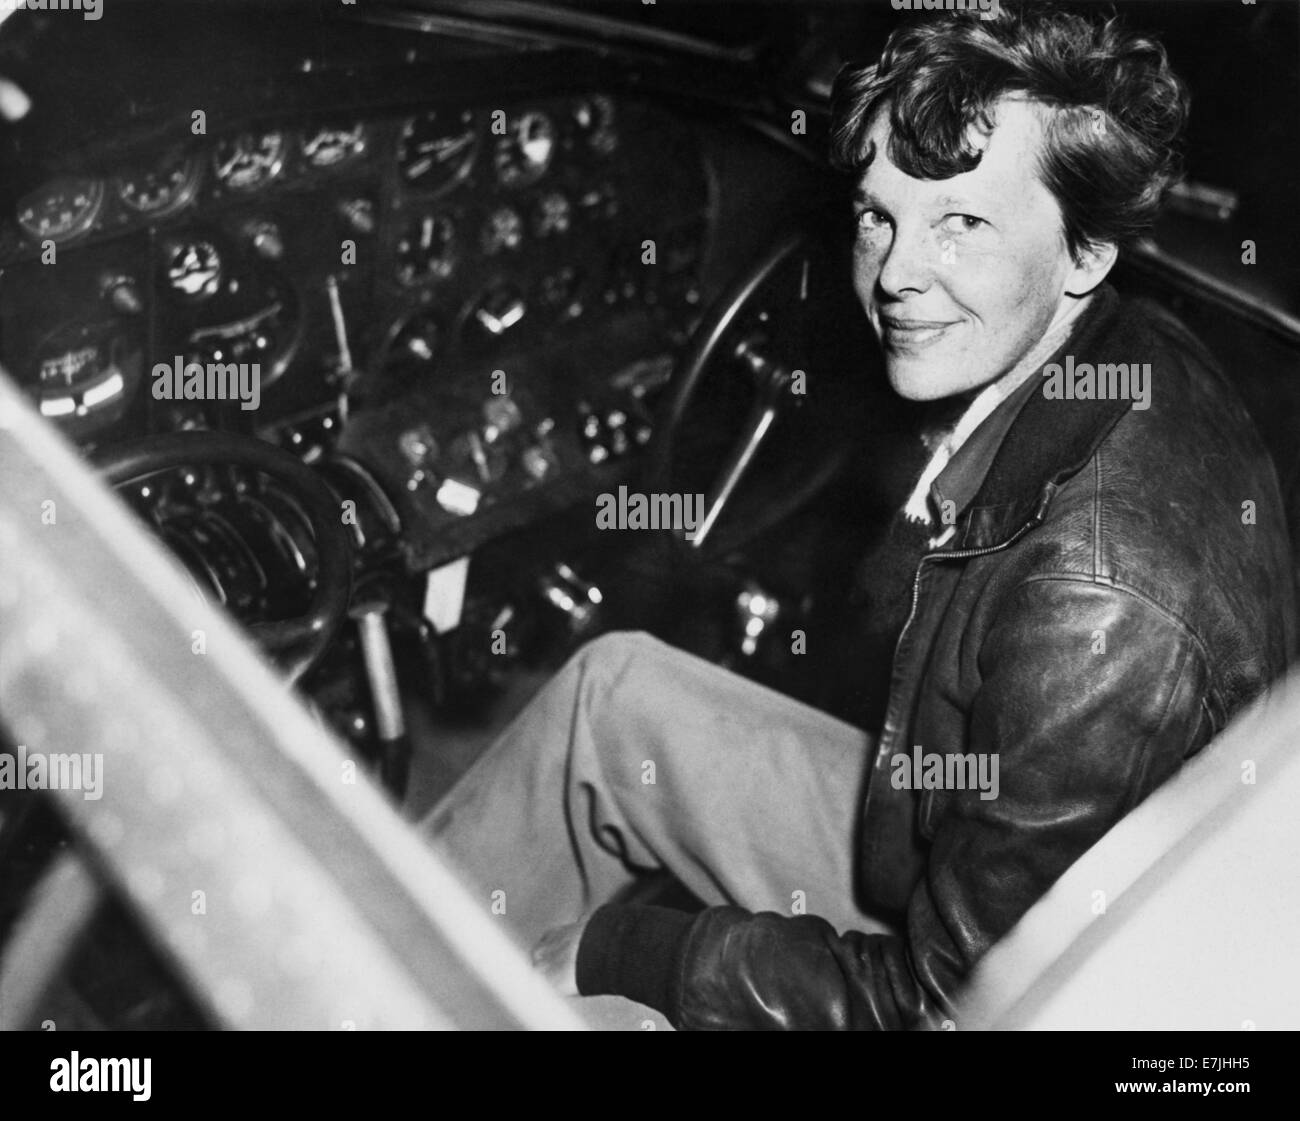 Foto d'epoca della pioniera e autrice dell'aviazione americana Amelia Earhart (1897 – dichiarata morta nel 1939) – Earthart e il suo navigatore Fred Noonan sono scomparsi nel 1937 mentre stava cercando di diventare la prima donna a completare un volo circumnavigazionale del globo. Earhart è raffigurato circa 1937 seduto nel pozzetto di un aeromobile Electra. Foto Stock